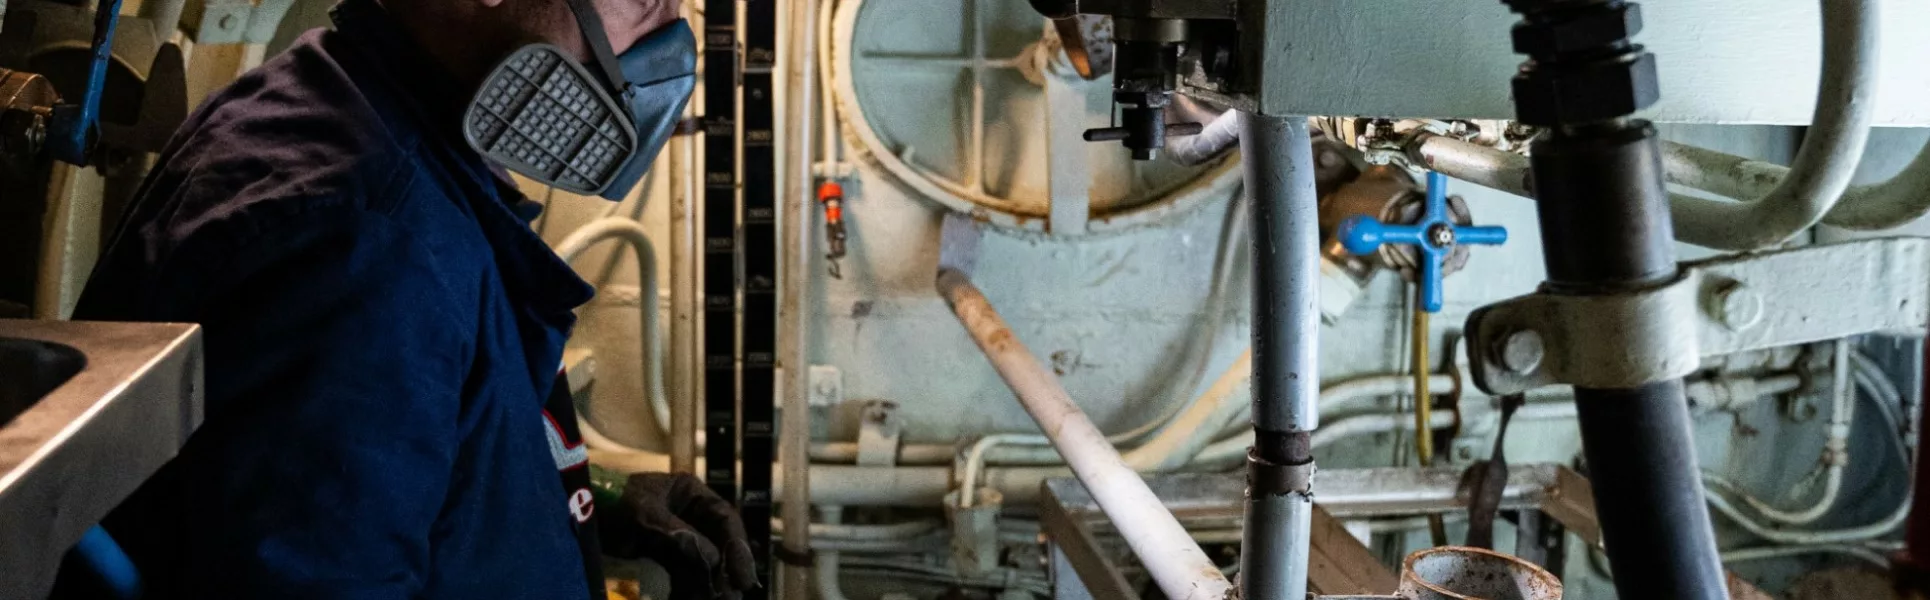 Un membre de l'équipe du chantier de restauration équipé d'un masque nettoie l'intérieur du sous-marin Espadon.